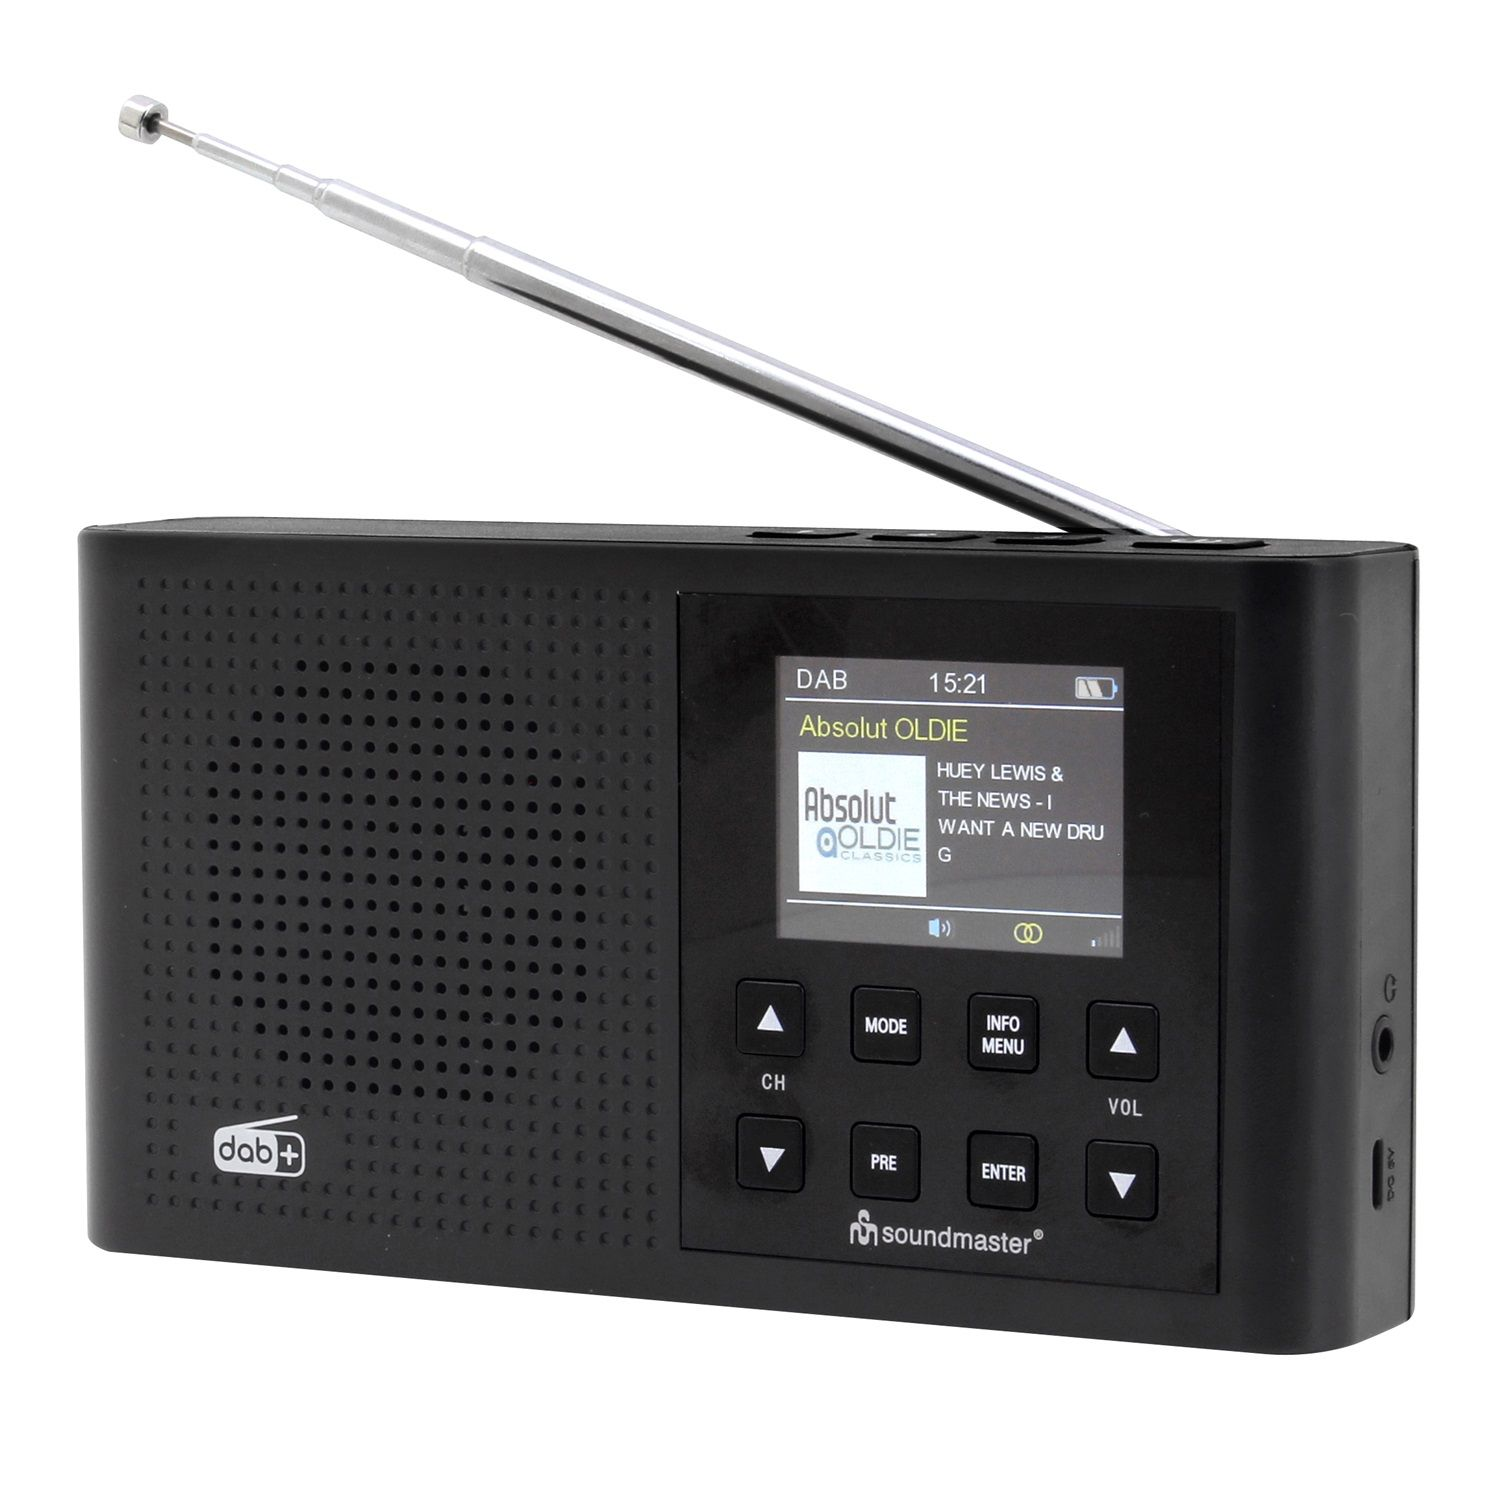 SOUNDMASTER DAB165SW Multifunktionsradio, DAB+, FM, DAB+, FM, Bluetooth, schwarz DAB, AM